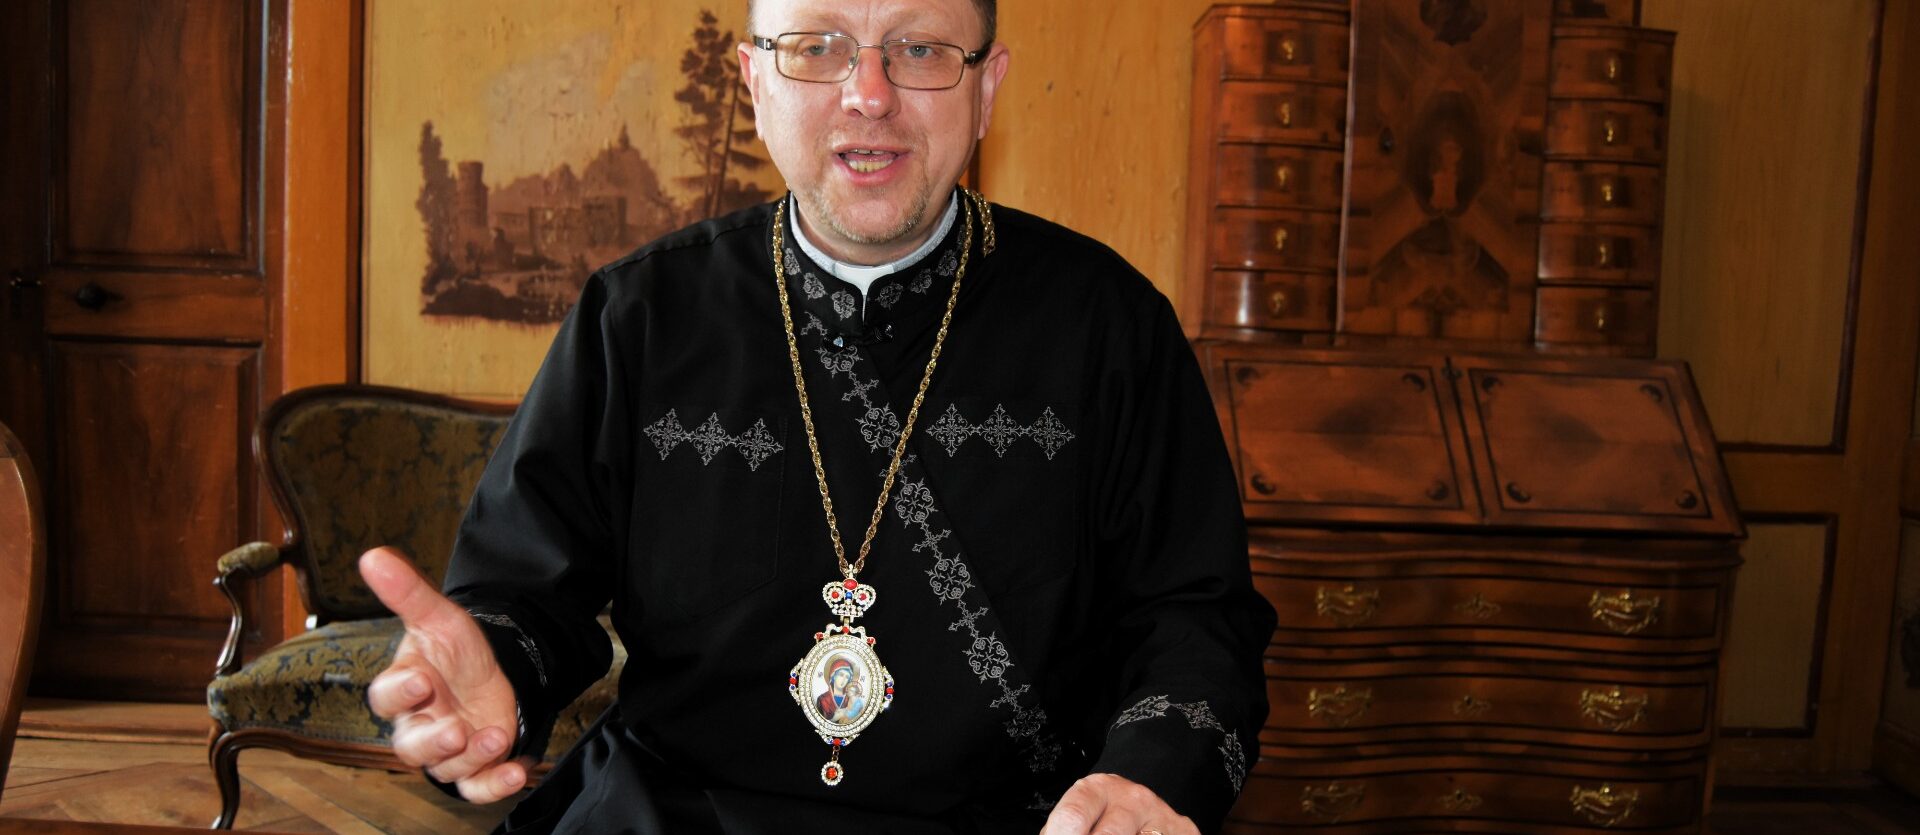 Mgr Volodymyr Hruza, évêque auxiliaire gréco-catholique de Lviv (Ukraine) | © Jacques Berset